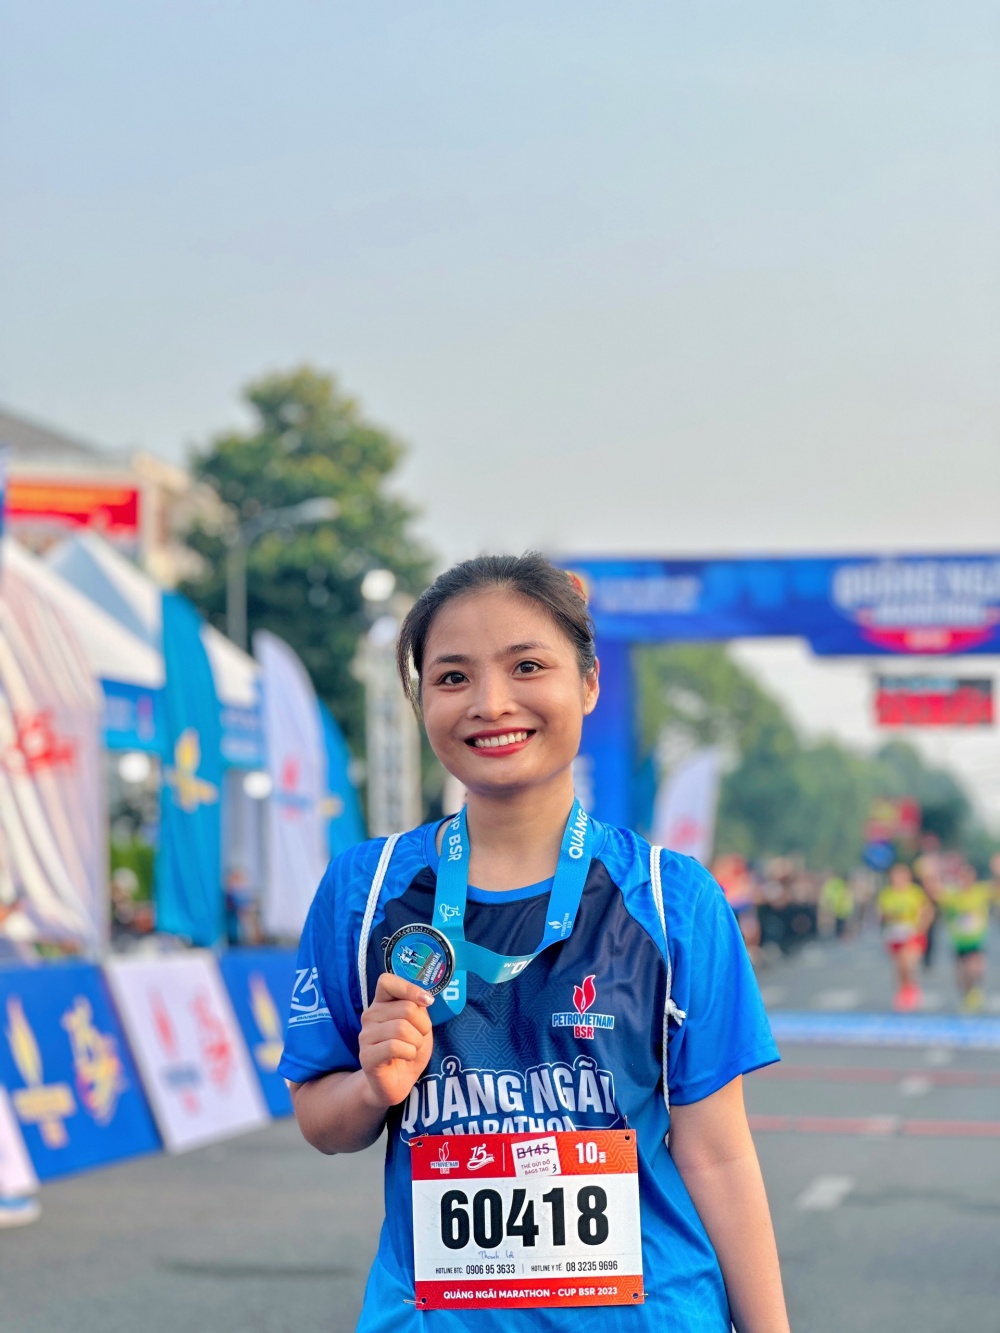 20-BVTU-AB-0001-06: Nữ Runner “tốc độ” Thanh Lộc đoạt giải tại Xuân Dầu khí lần 2, PVcomBank.